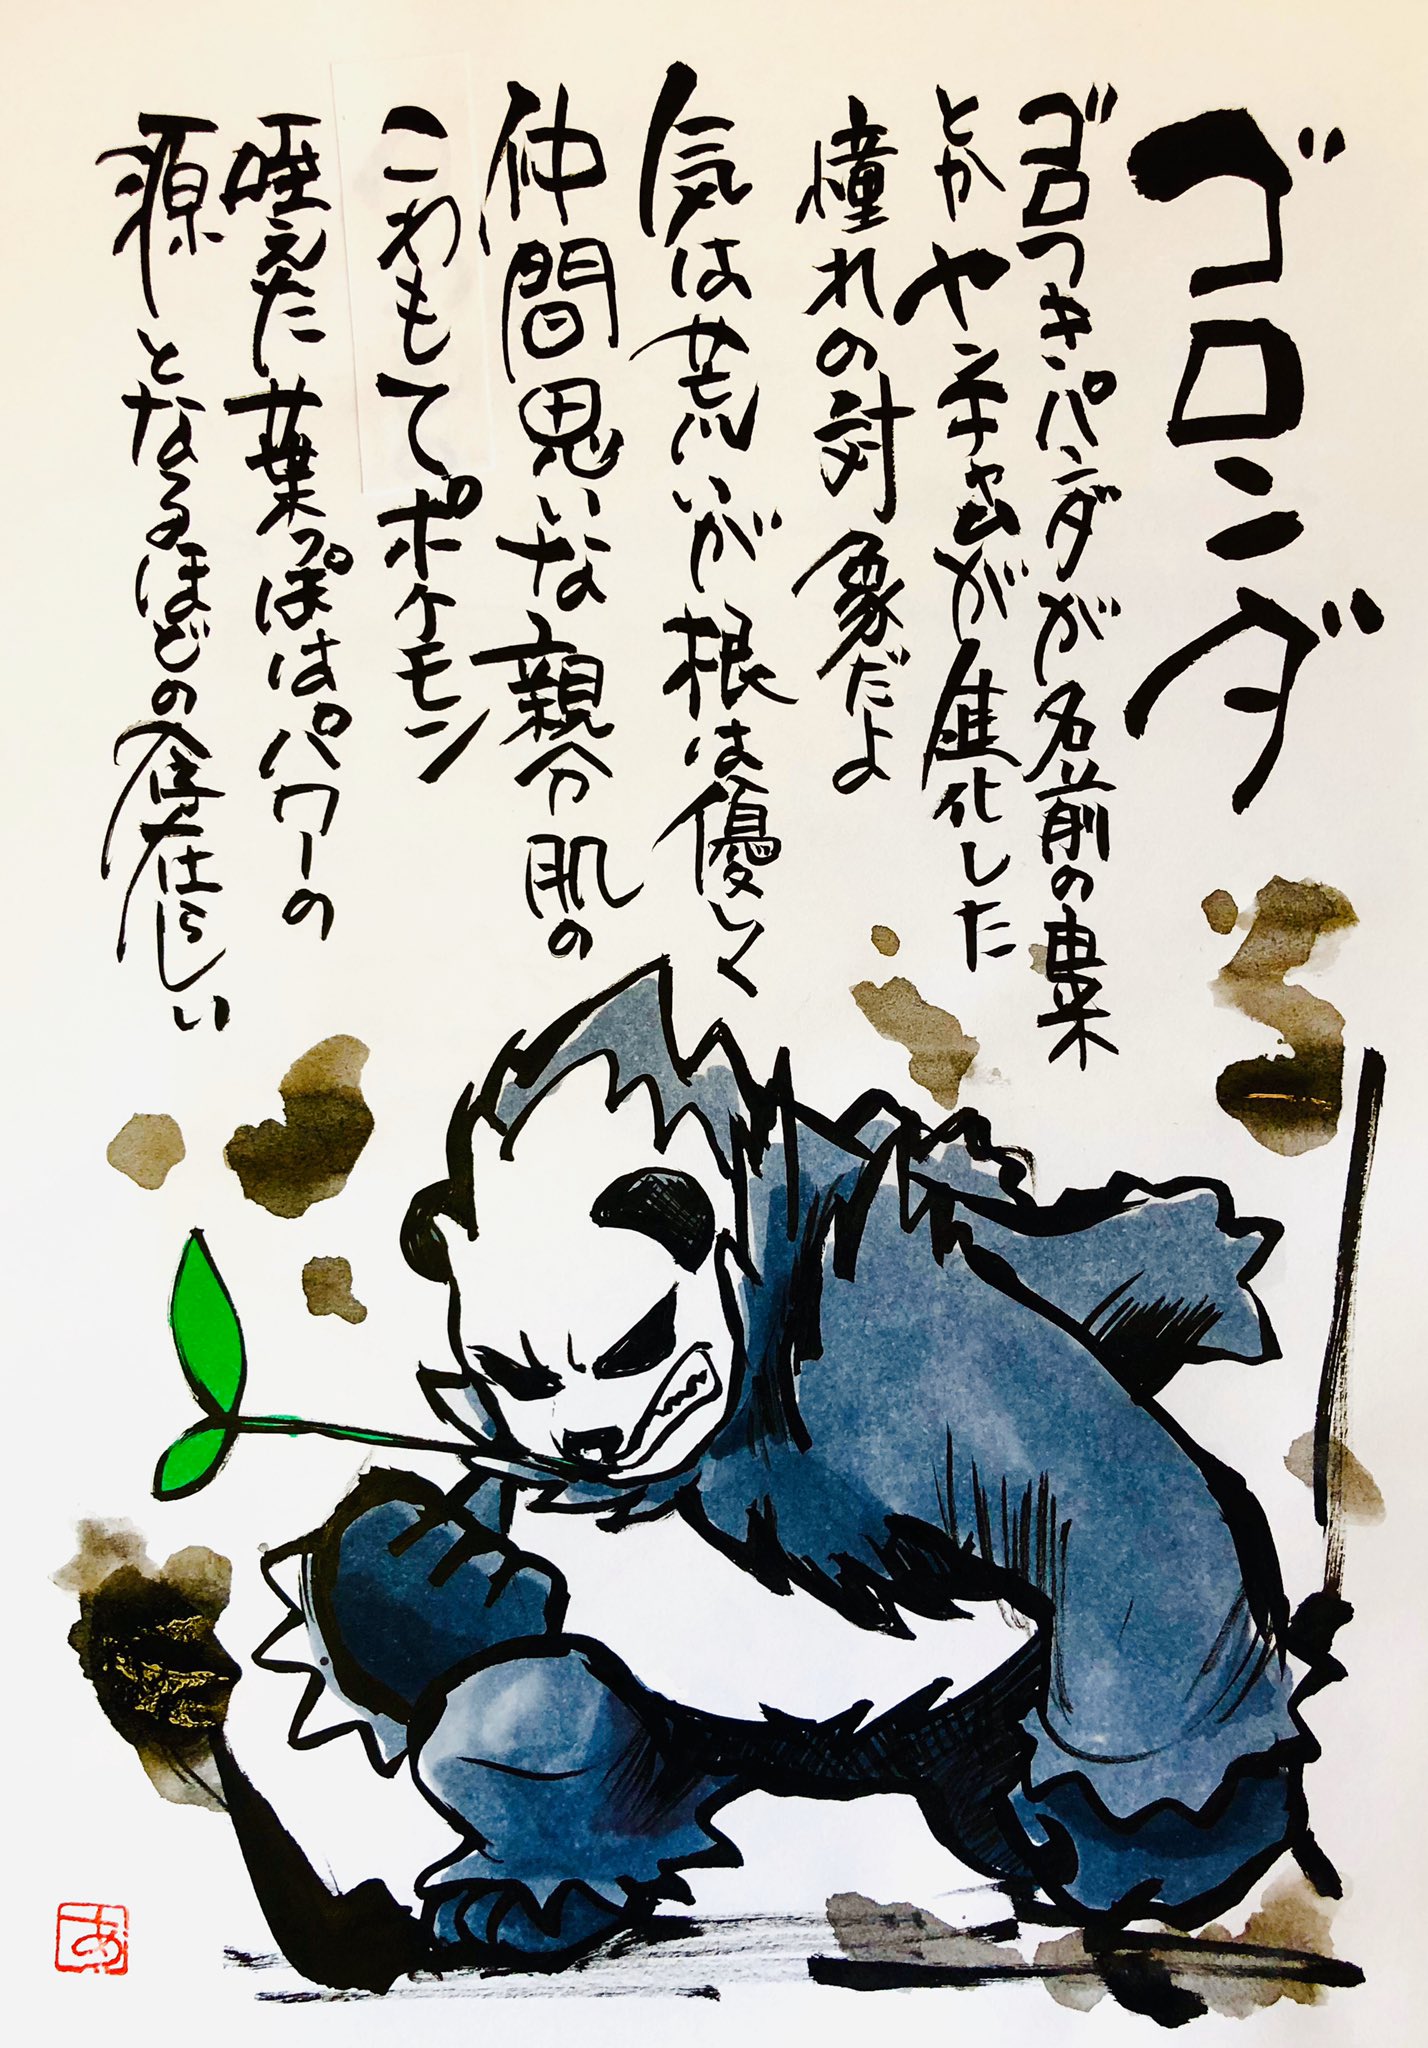 Aki Shimamoto ポケモン絵師休憩中エネルギーアートクリエーター 筆ペンでポケモンを描く ゴロンダ ゴロつきパンダが名前の由来とか ヤンチャムが進化した憧れの対象だよ 気は荒いがねは優しく仲間思いな 親分肌のこわもてポケモン 咥えた葉っぱはパワー